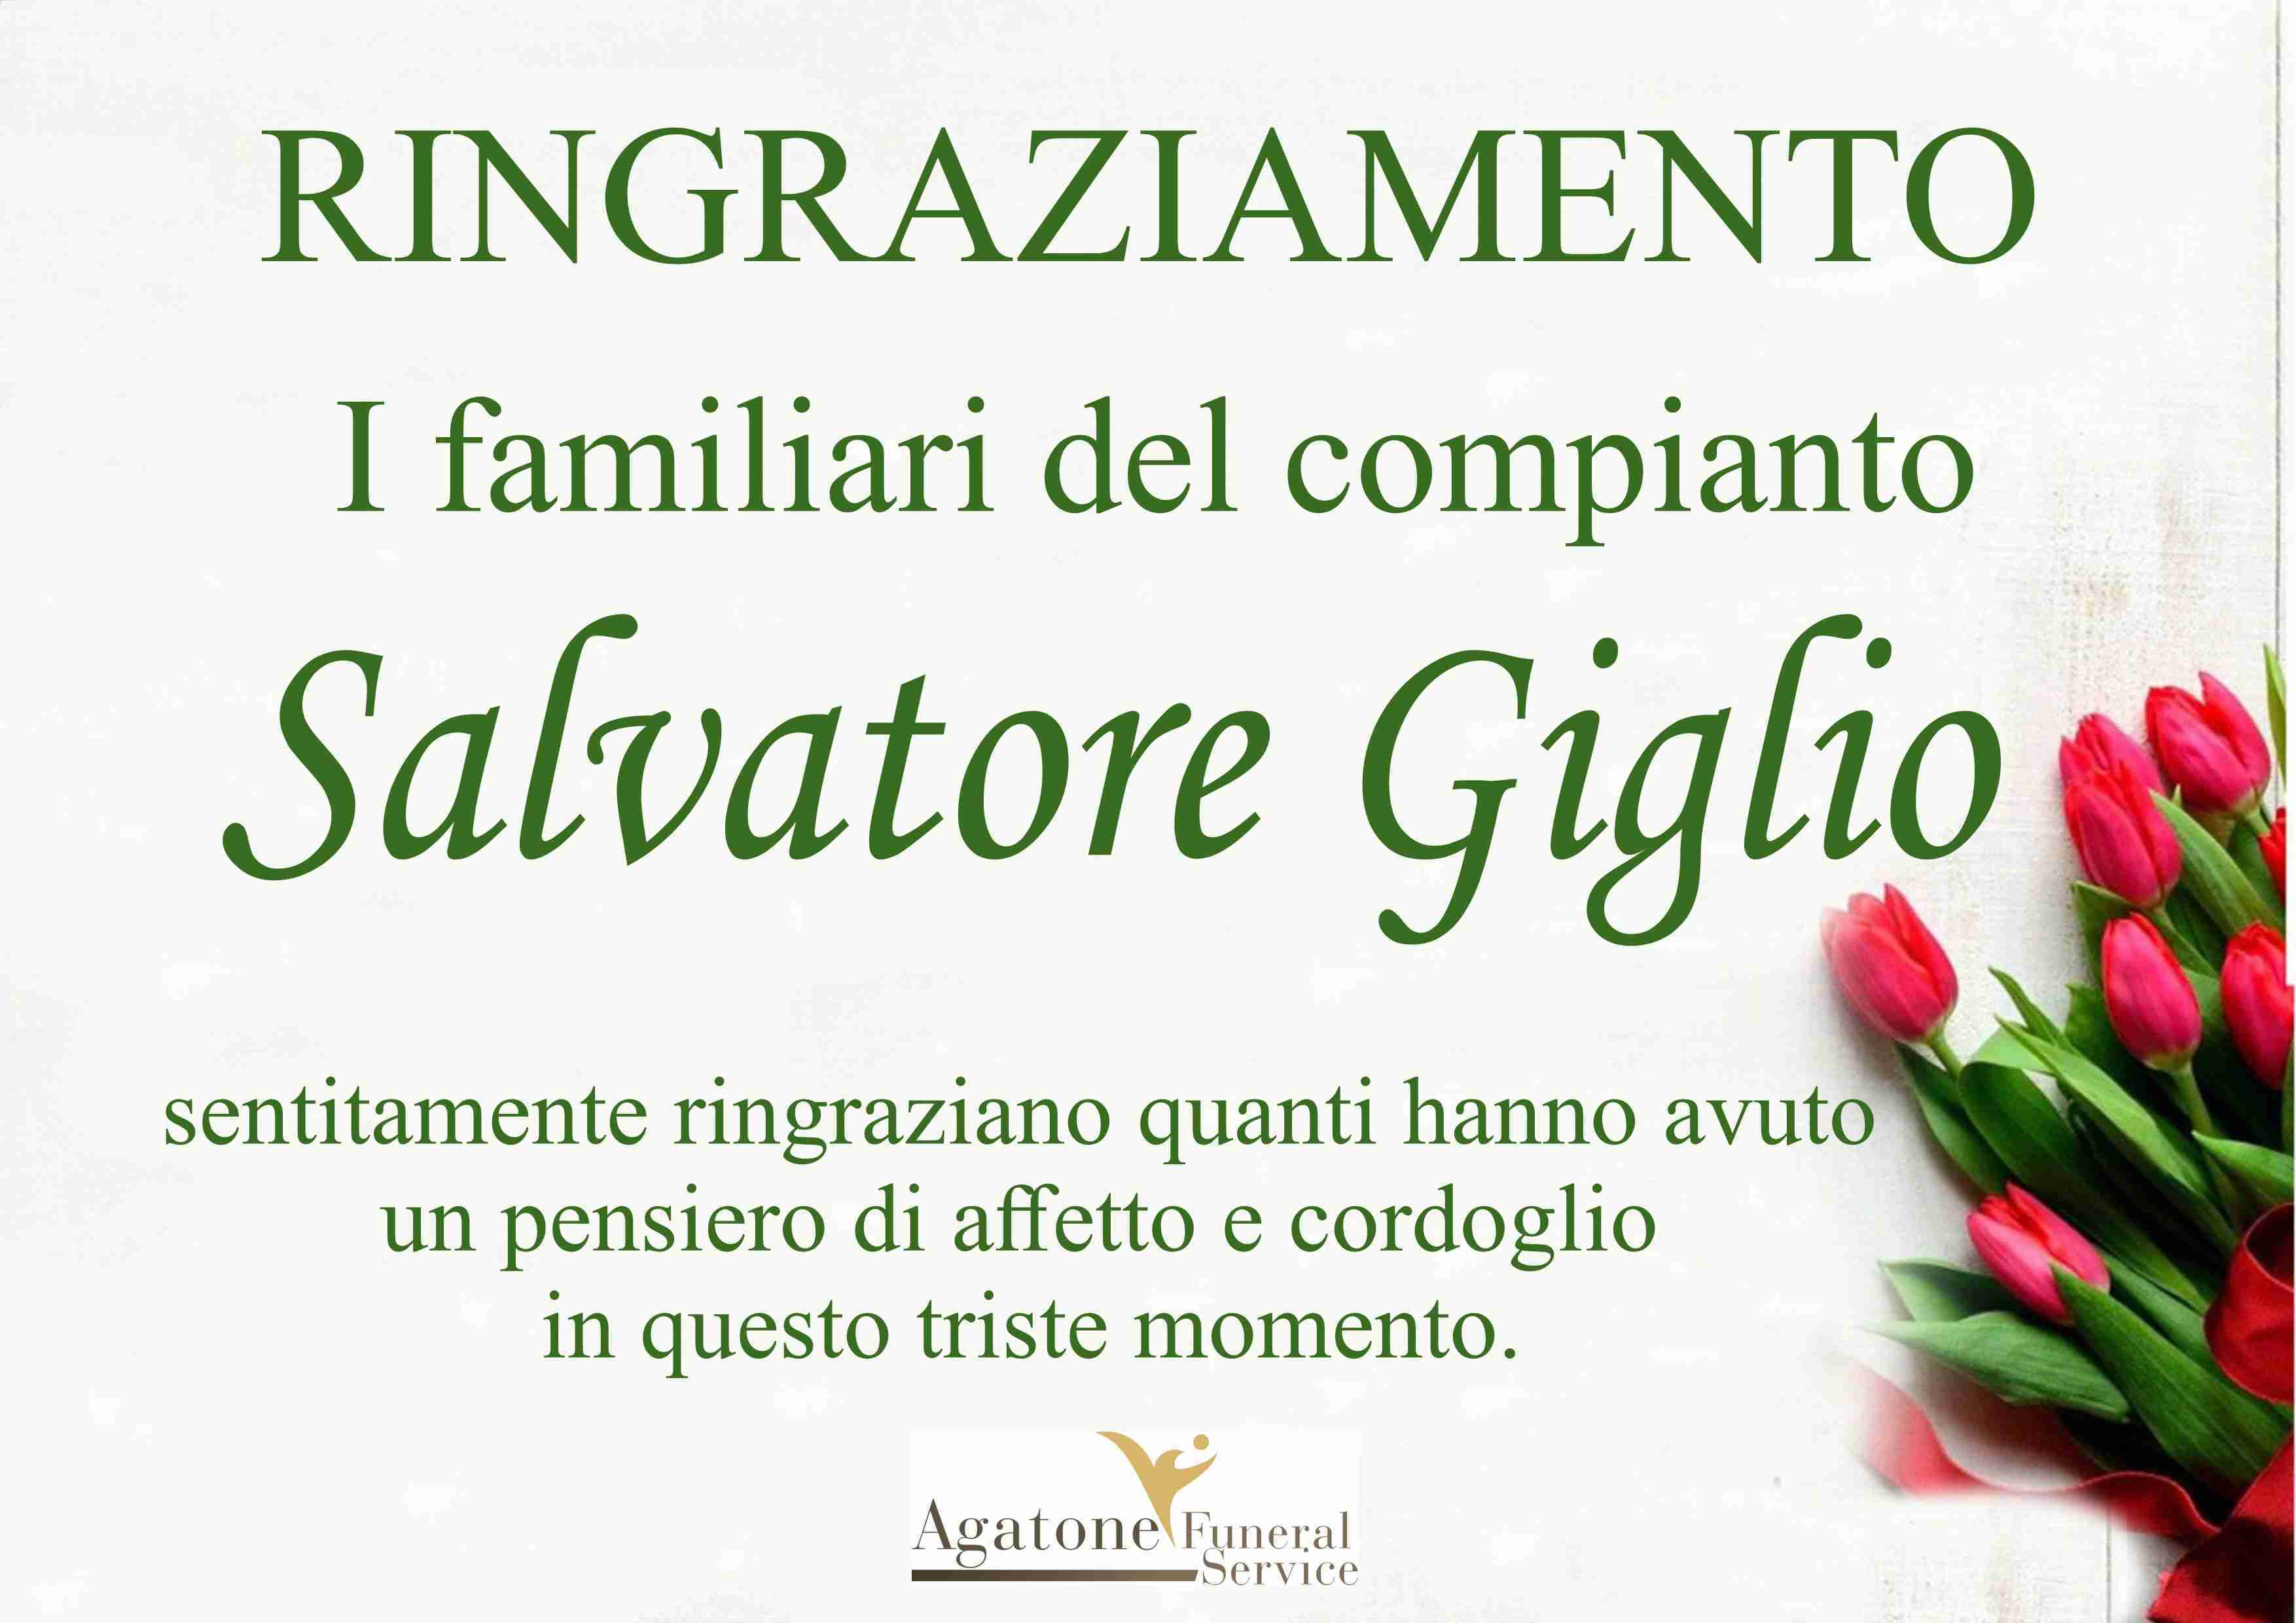 Salvatore Giglio